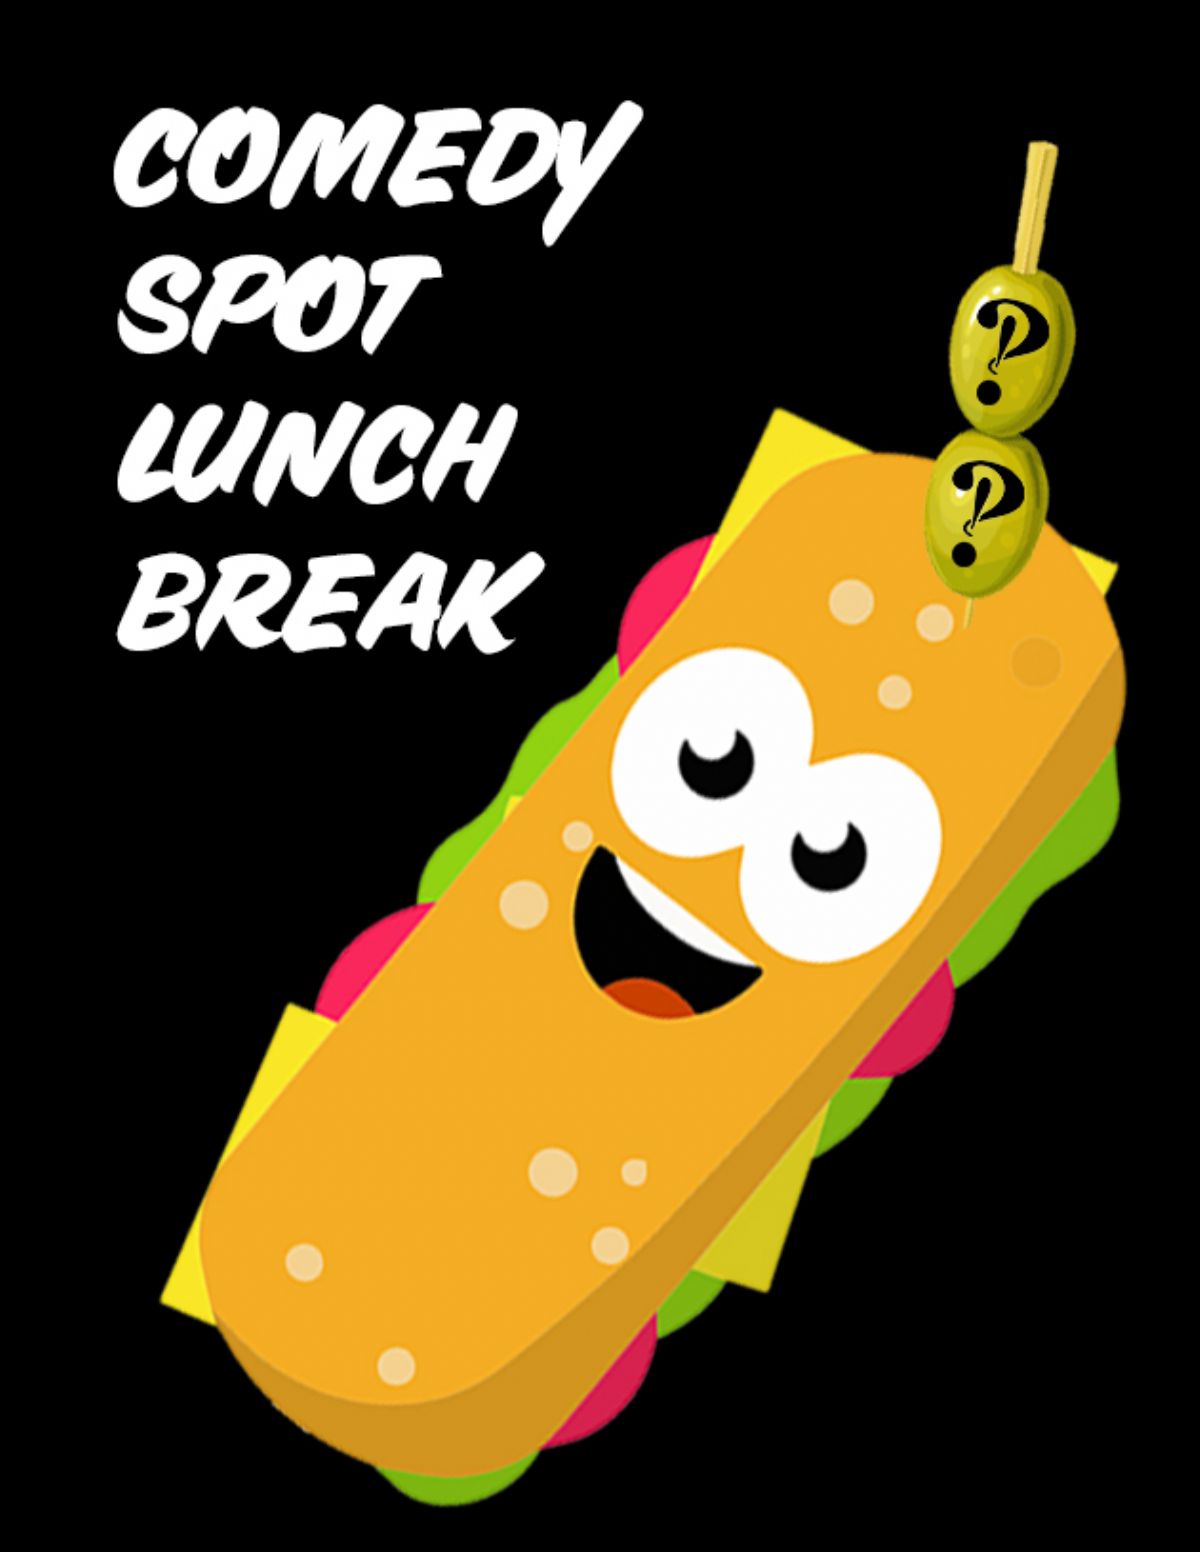 Comedy Spot Lunch Break